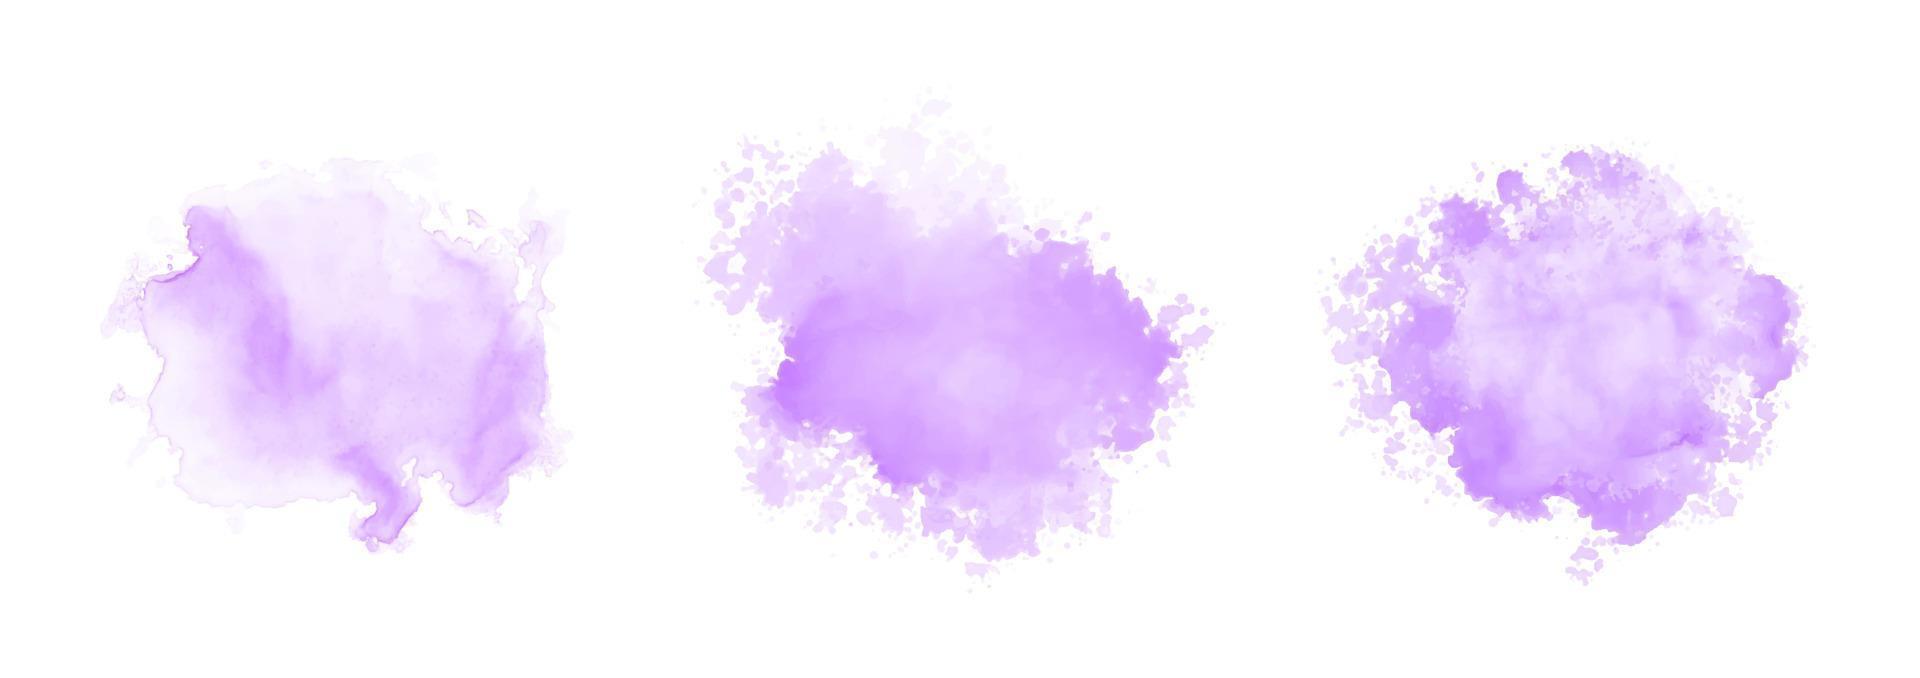 ensemble d'éclaboussures d'eau aquarelle violette abstraite sur fond blanc vecteur